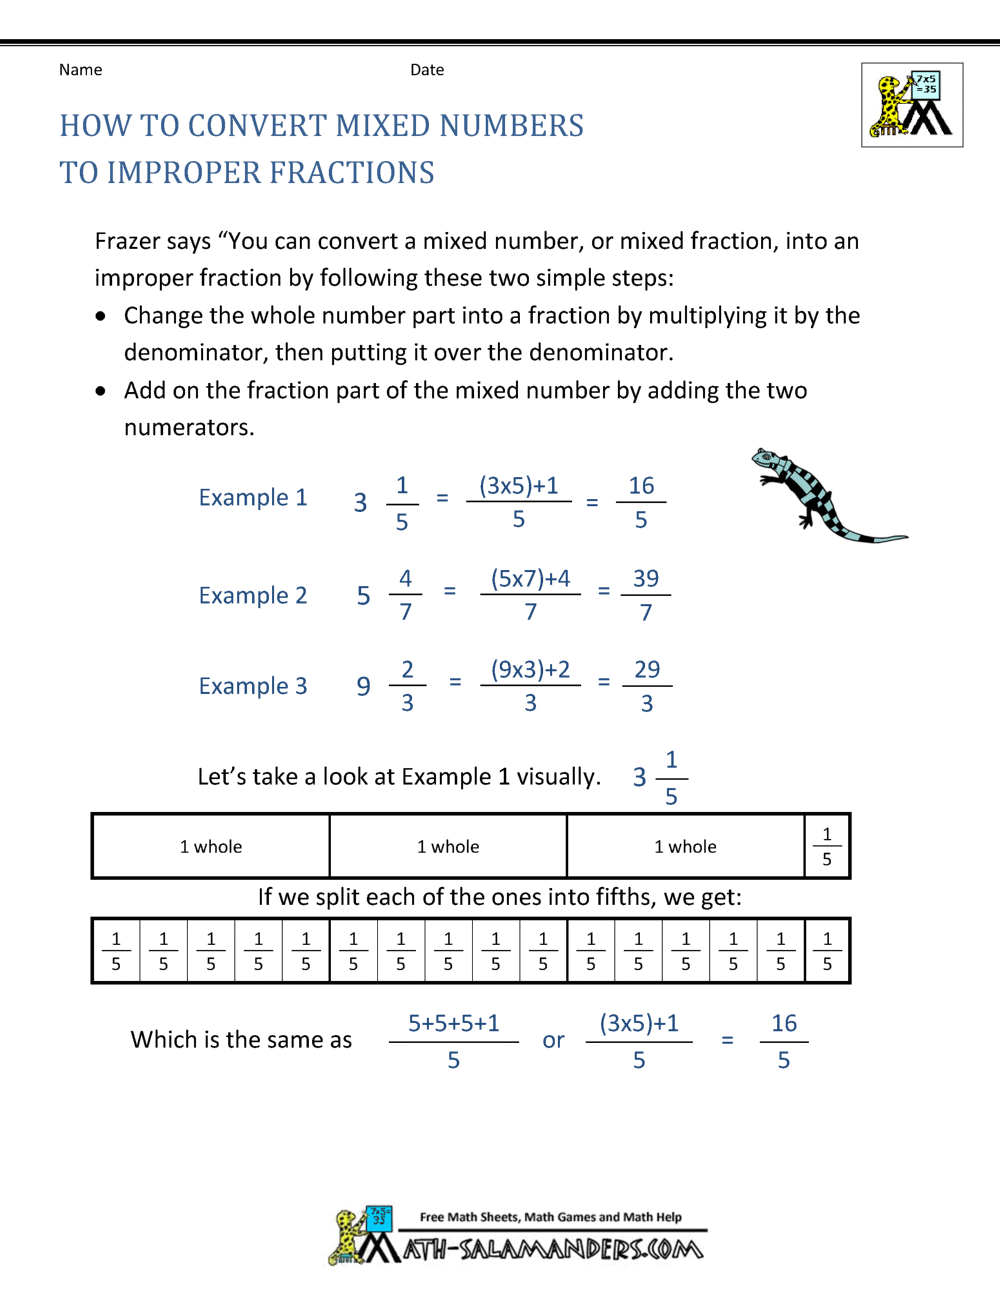 Powers of ten homework help